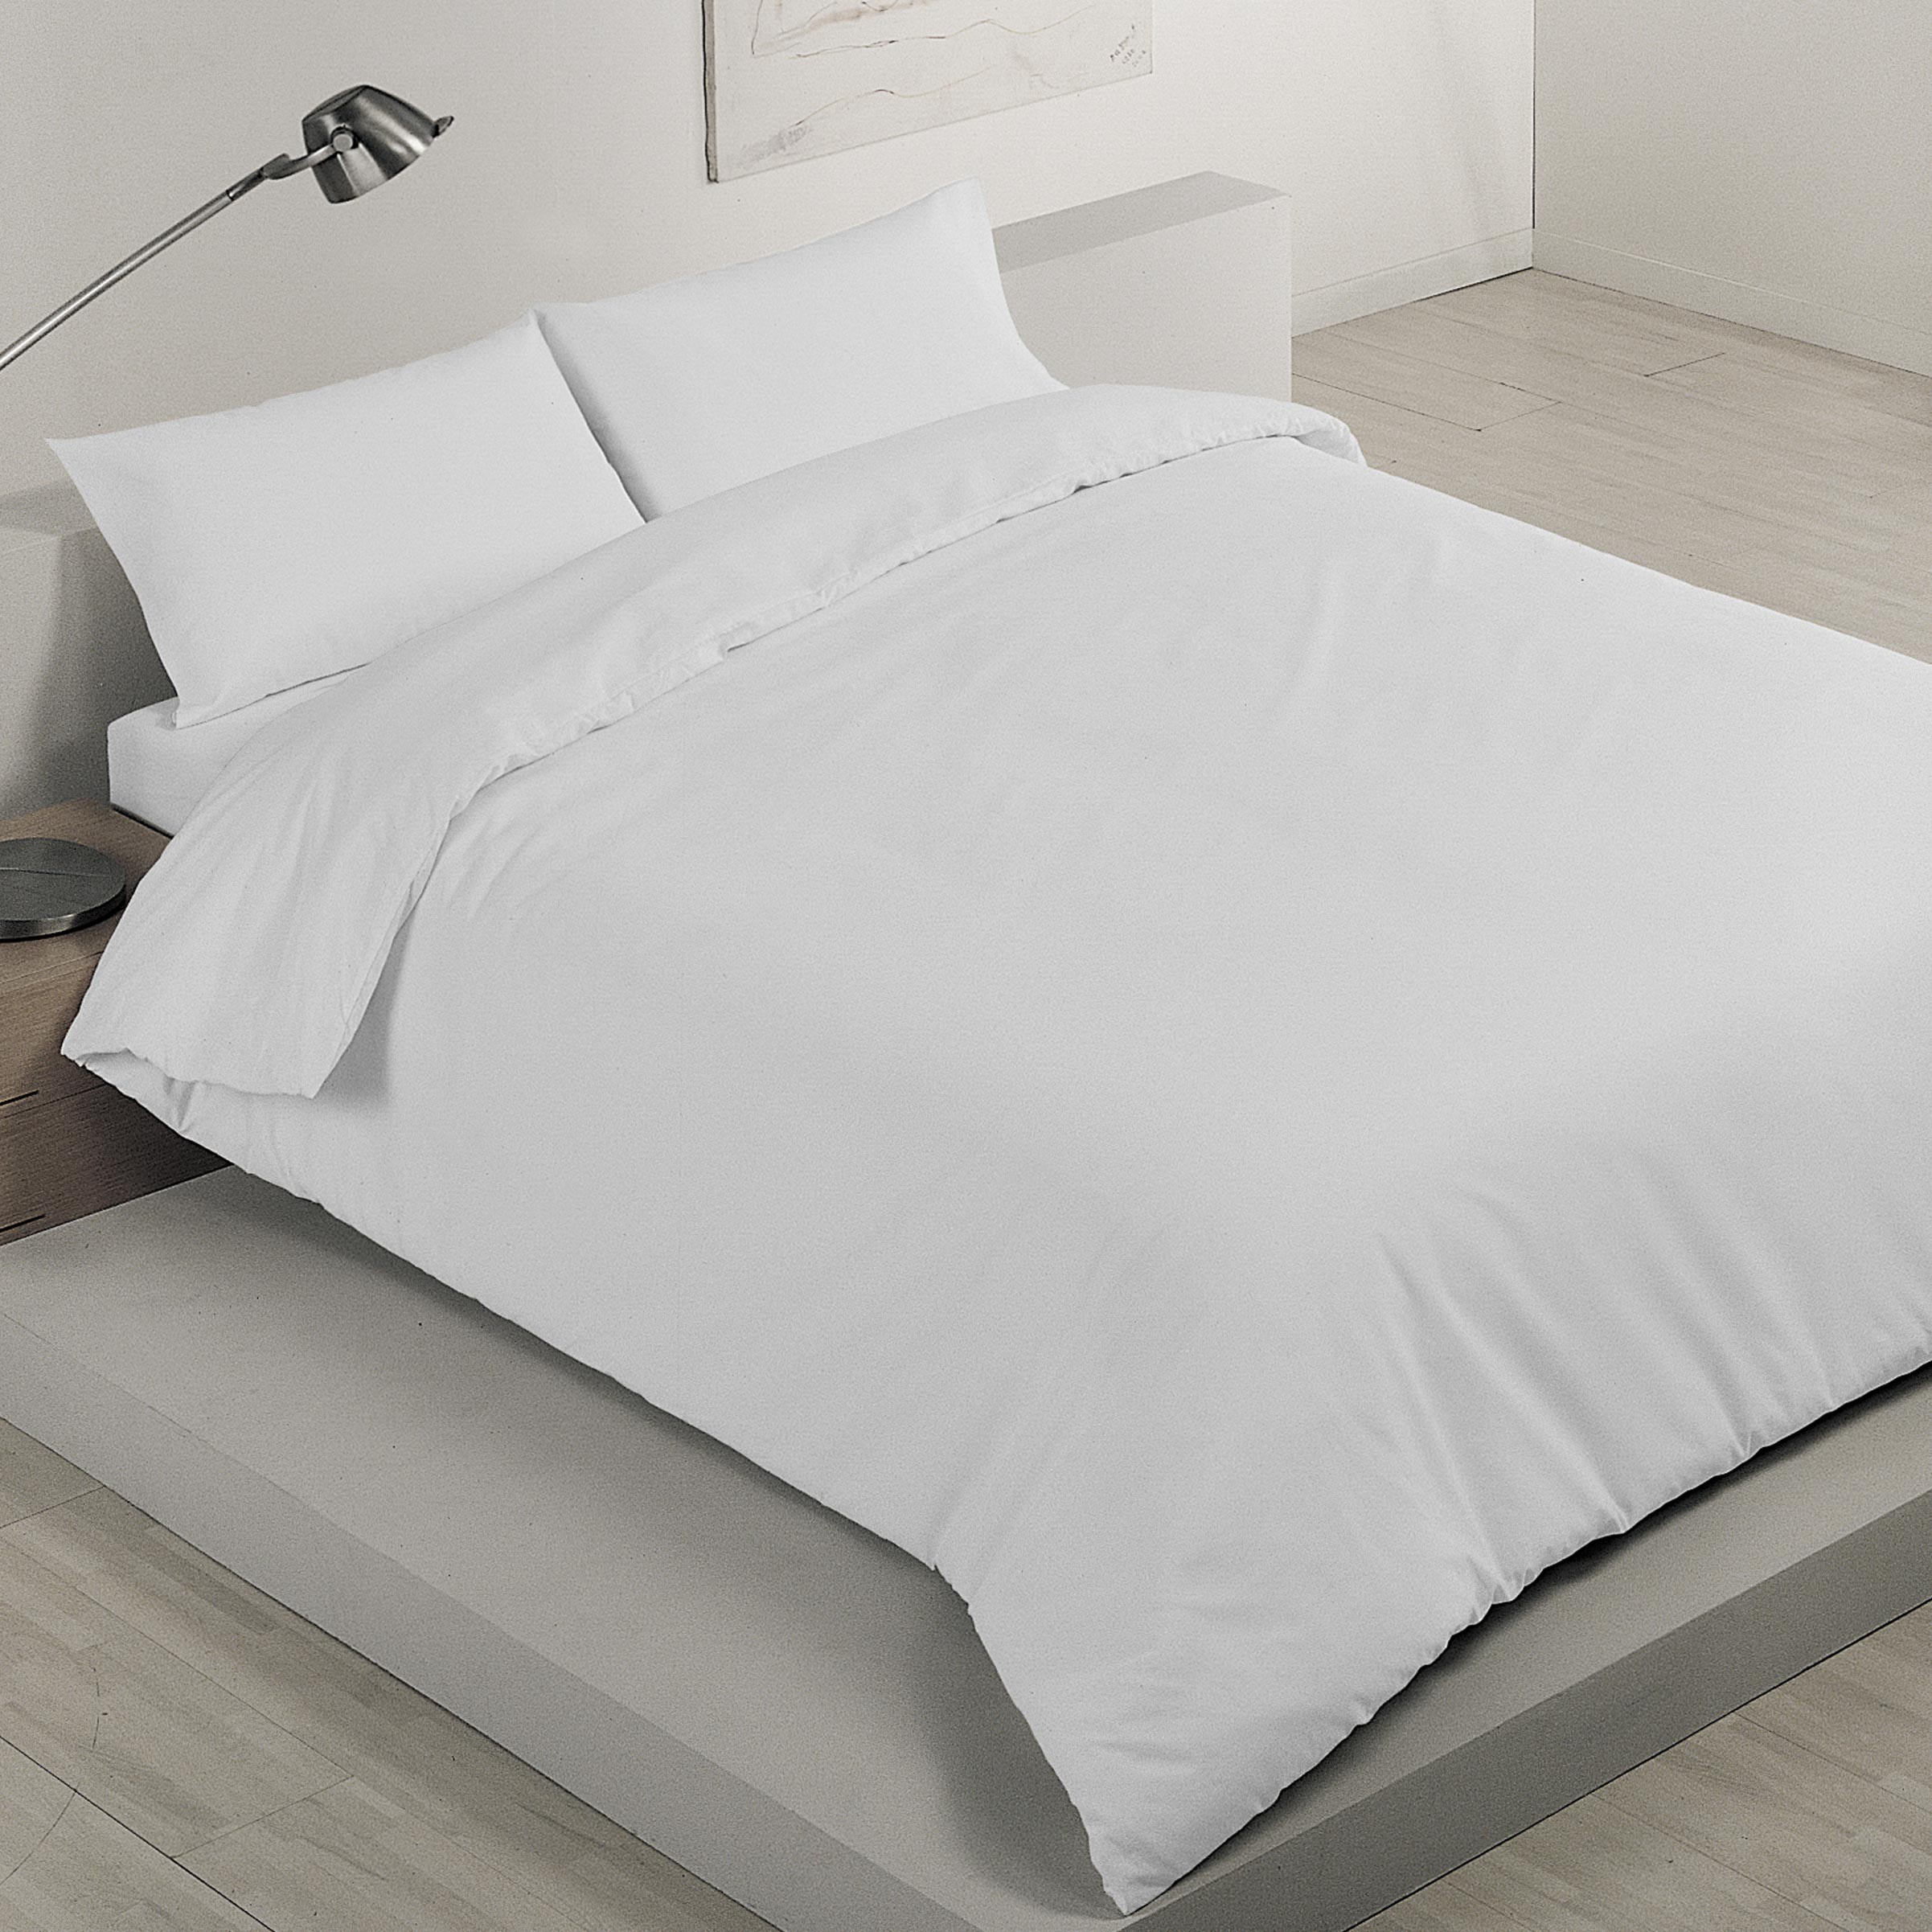 Funda de almohada 45 x 0,3 x 90 cm Blanco (12 Unidades)